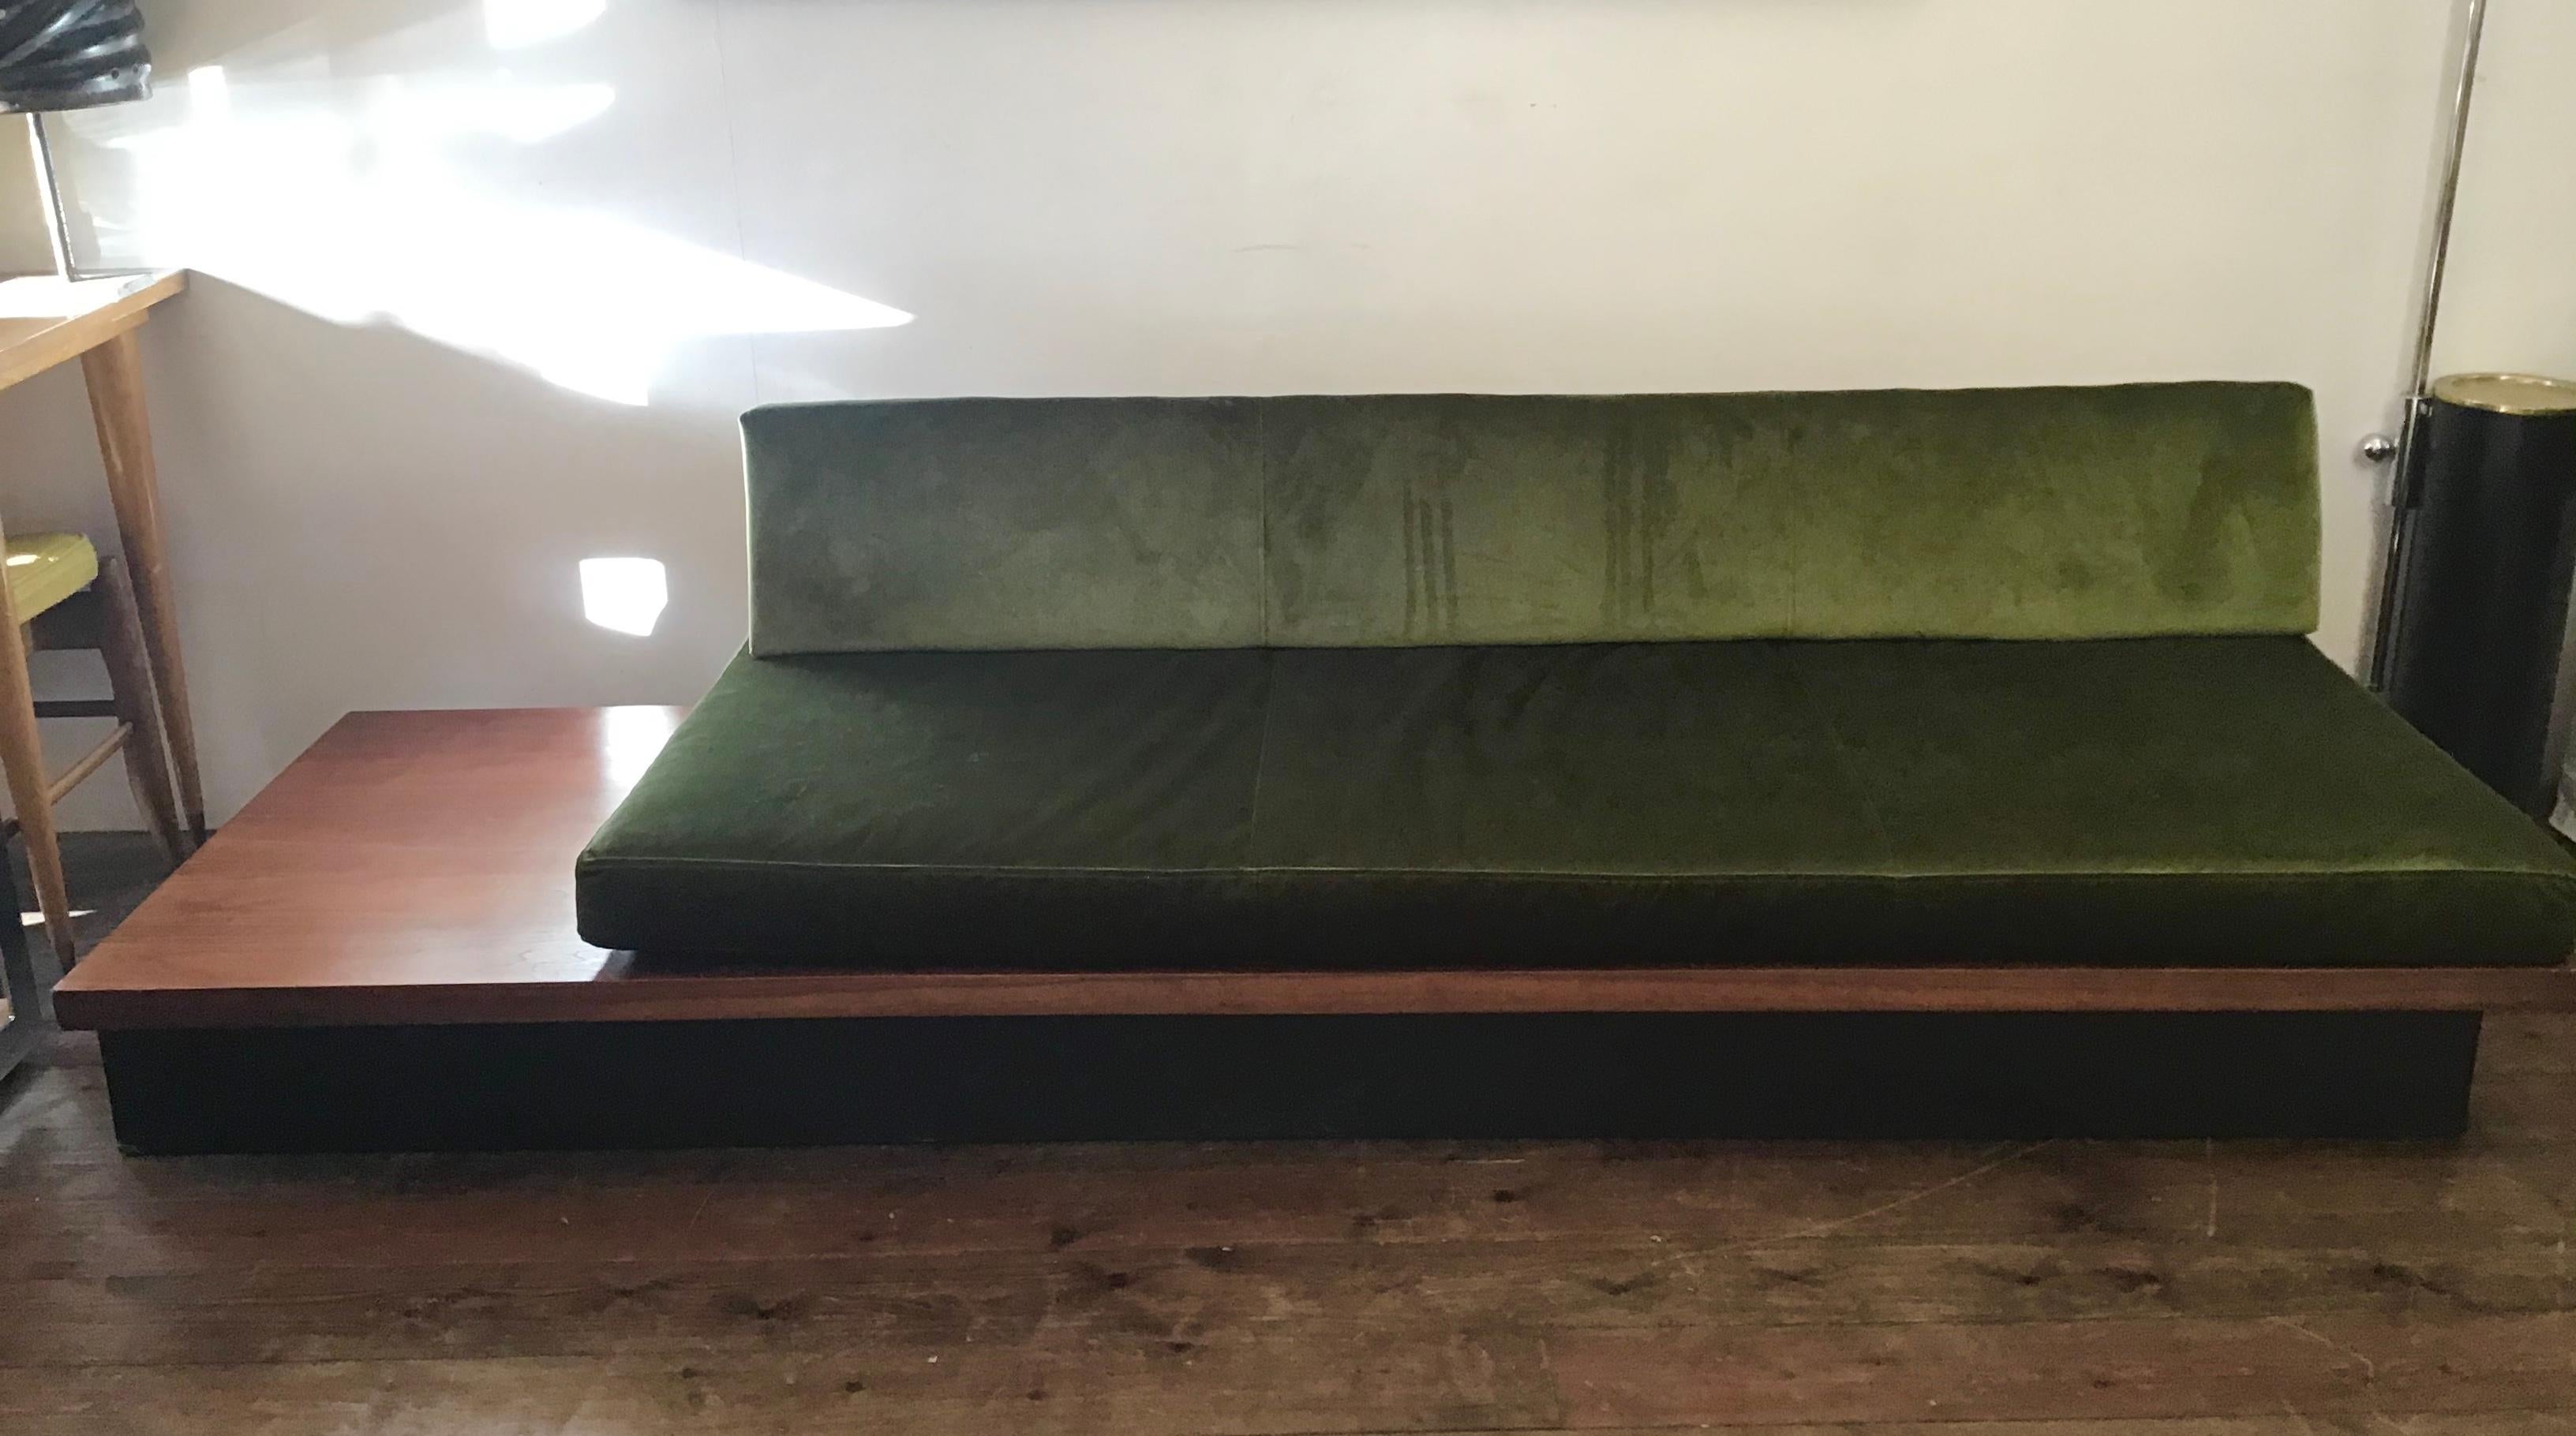 Nussbaum Pinth Daybed Sofa einfach und ein schönes Beispiel für Midcentury Design

Milo Baughman für Thayer Coggin.